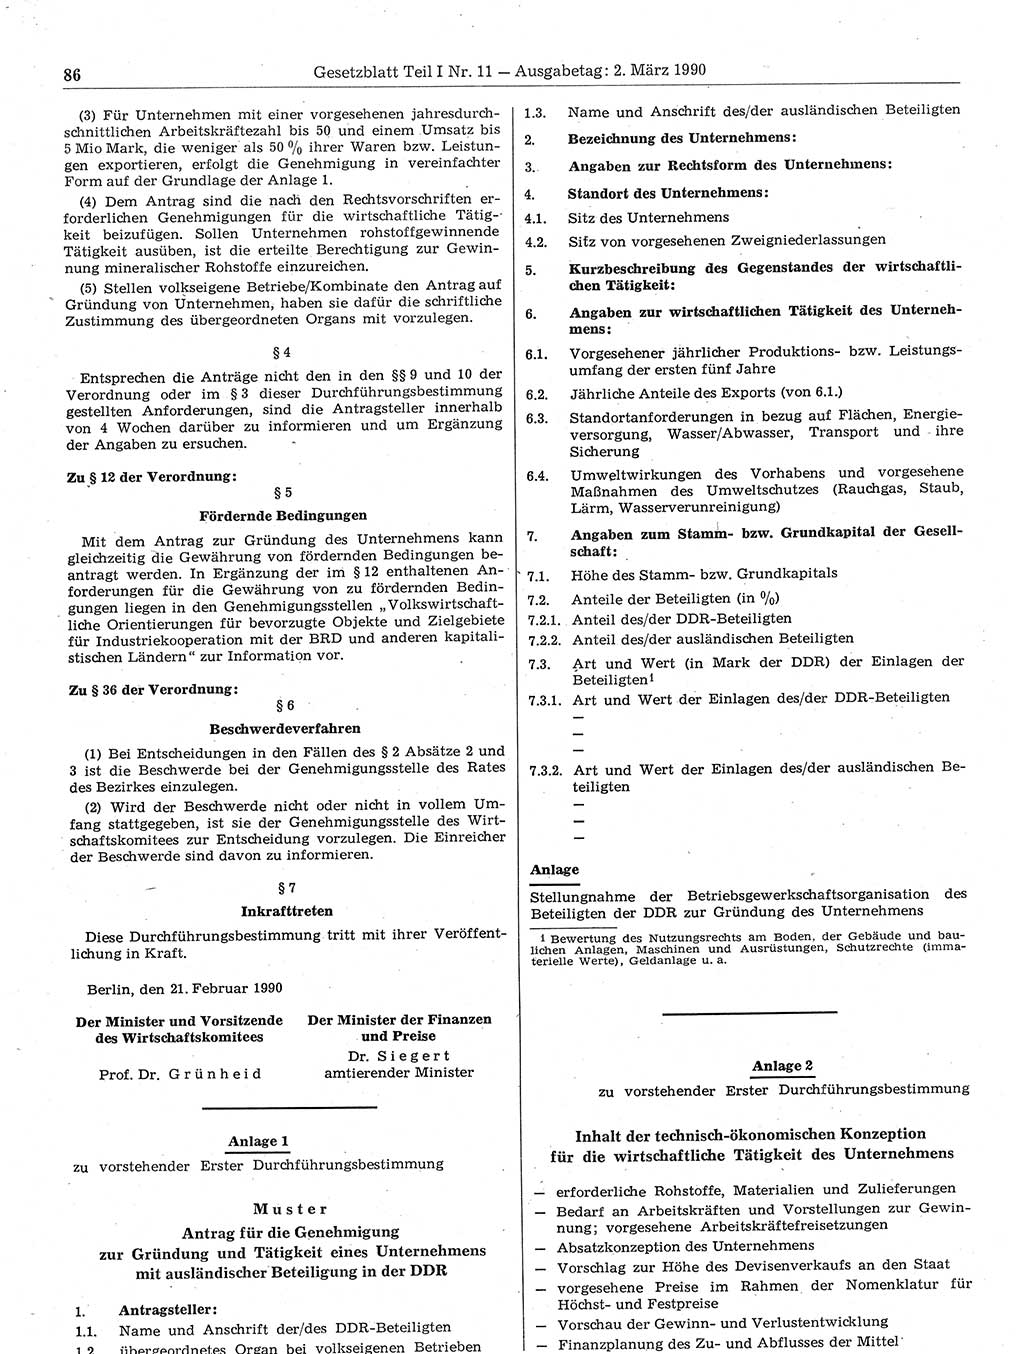 Gesetzblatt (GBl.) der Deutschen Demokratischen Republik (DDR) Teil Ⅰ 1990, Seite 86 (GBl. DDR Ⅰ 1990, S. 86)